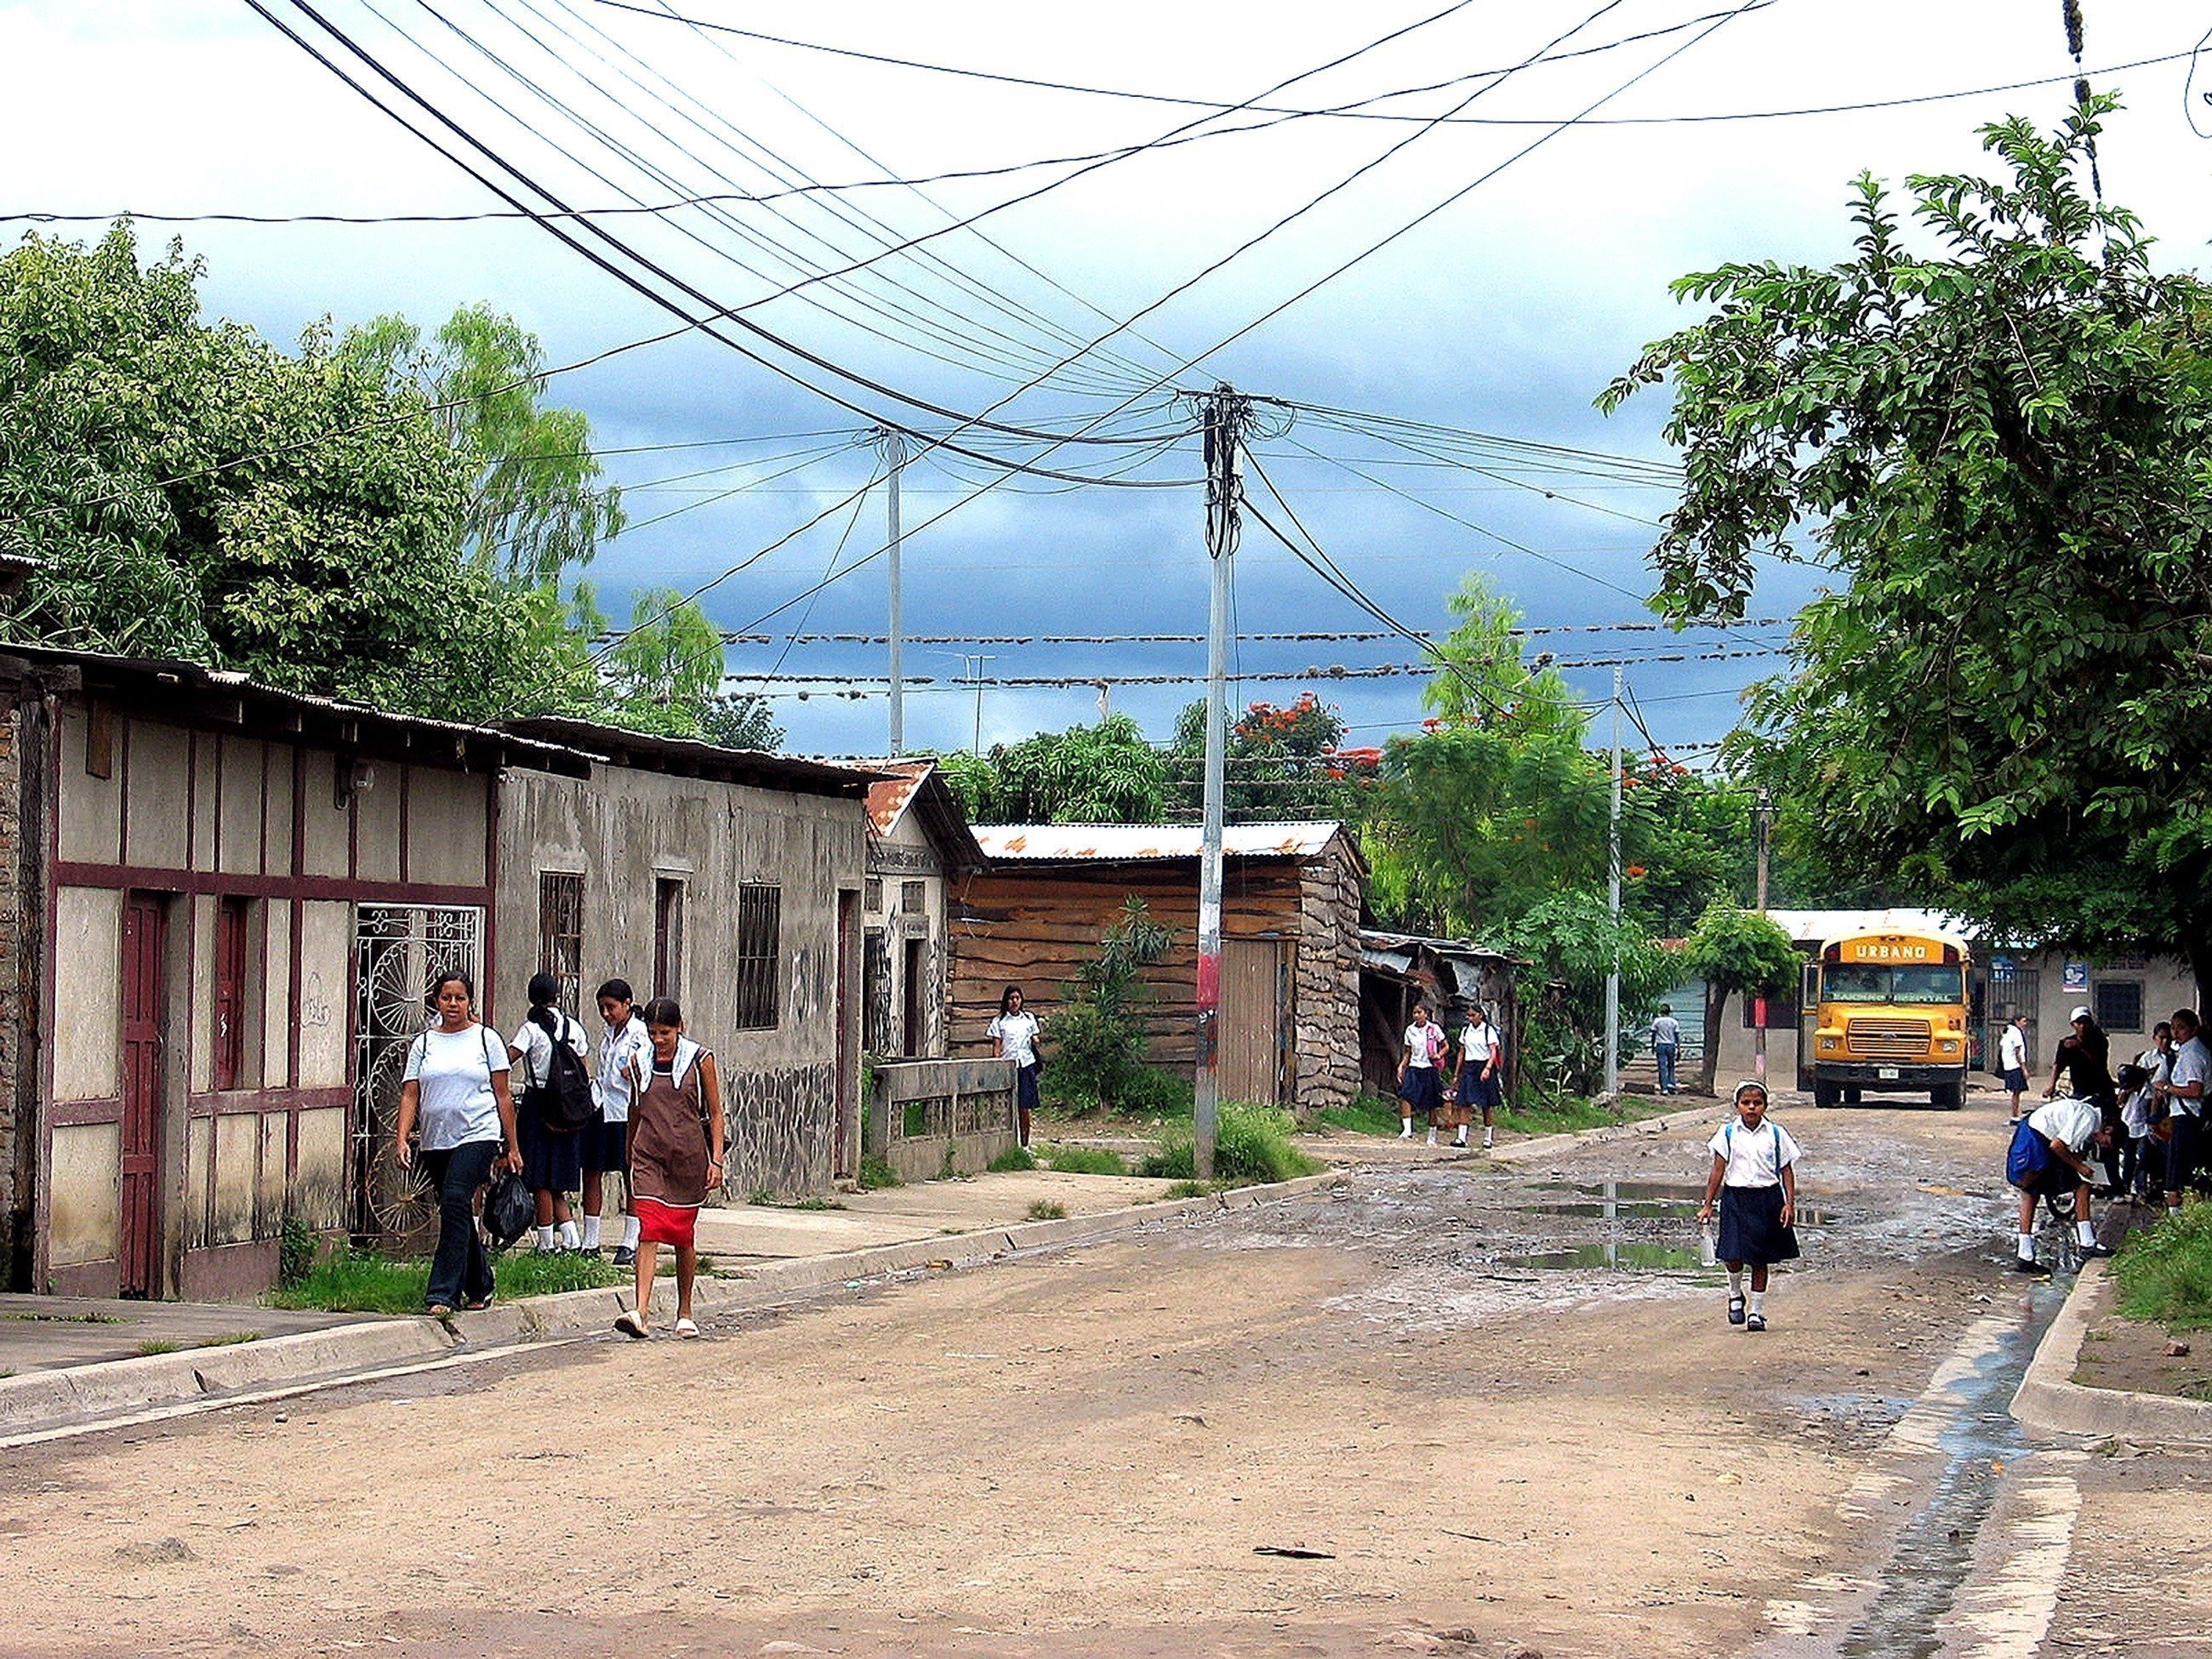 La strada di un villaggio in Nicaragua